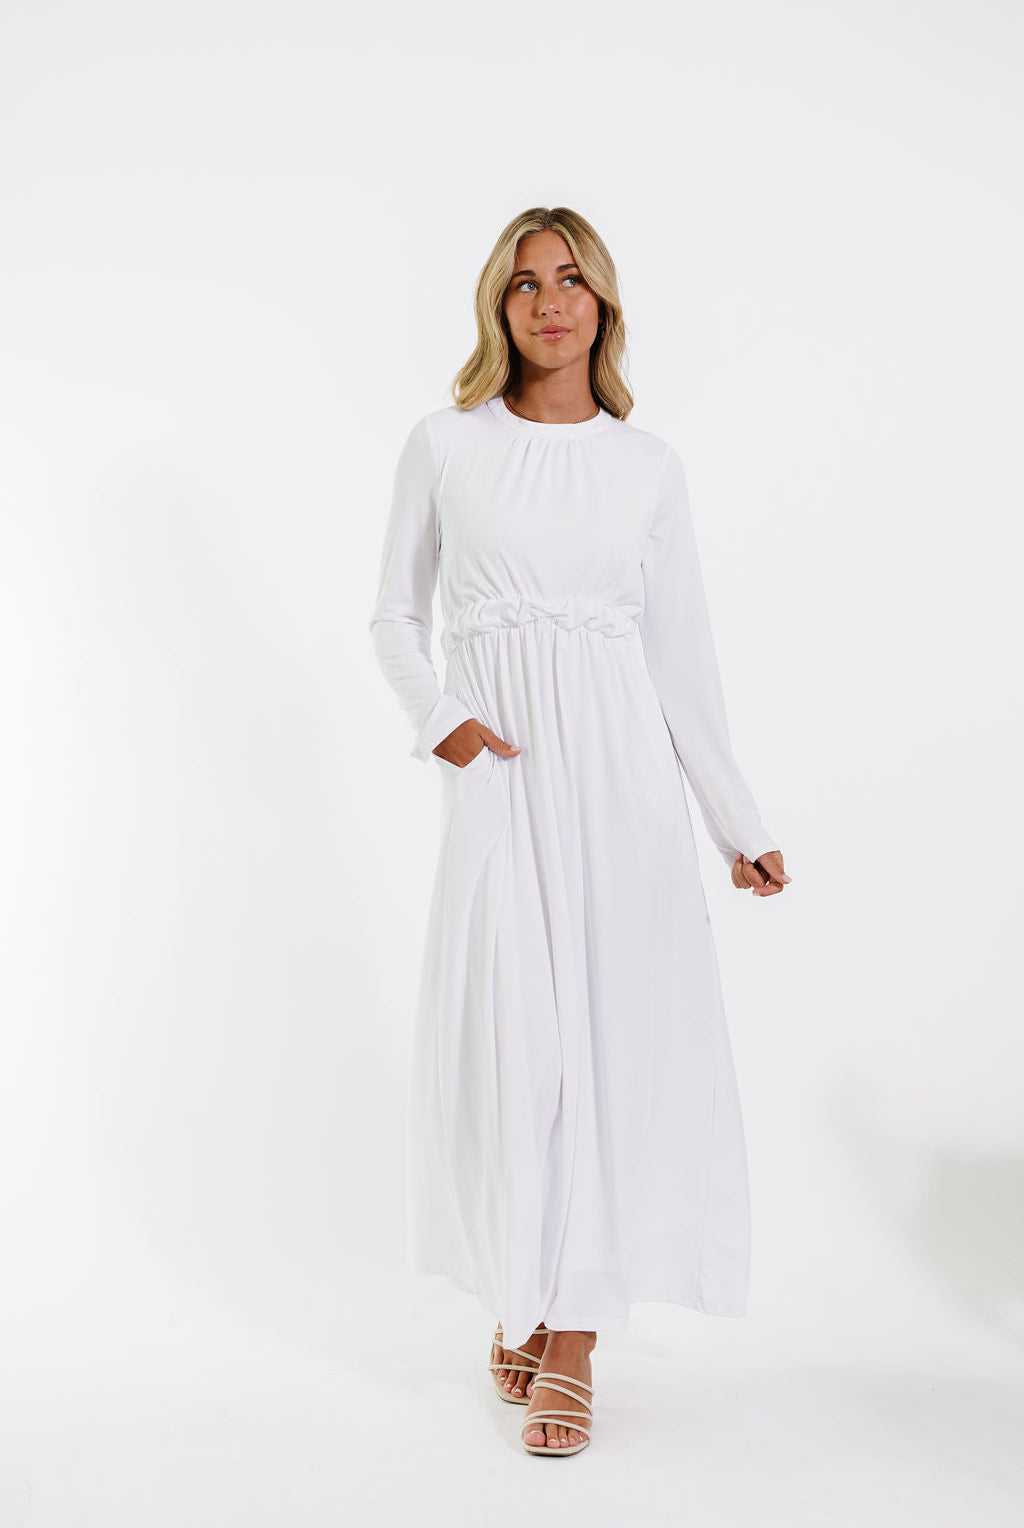 Elegant white dresses